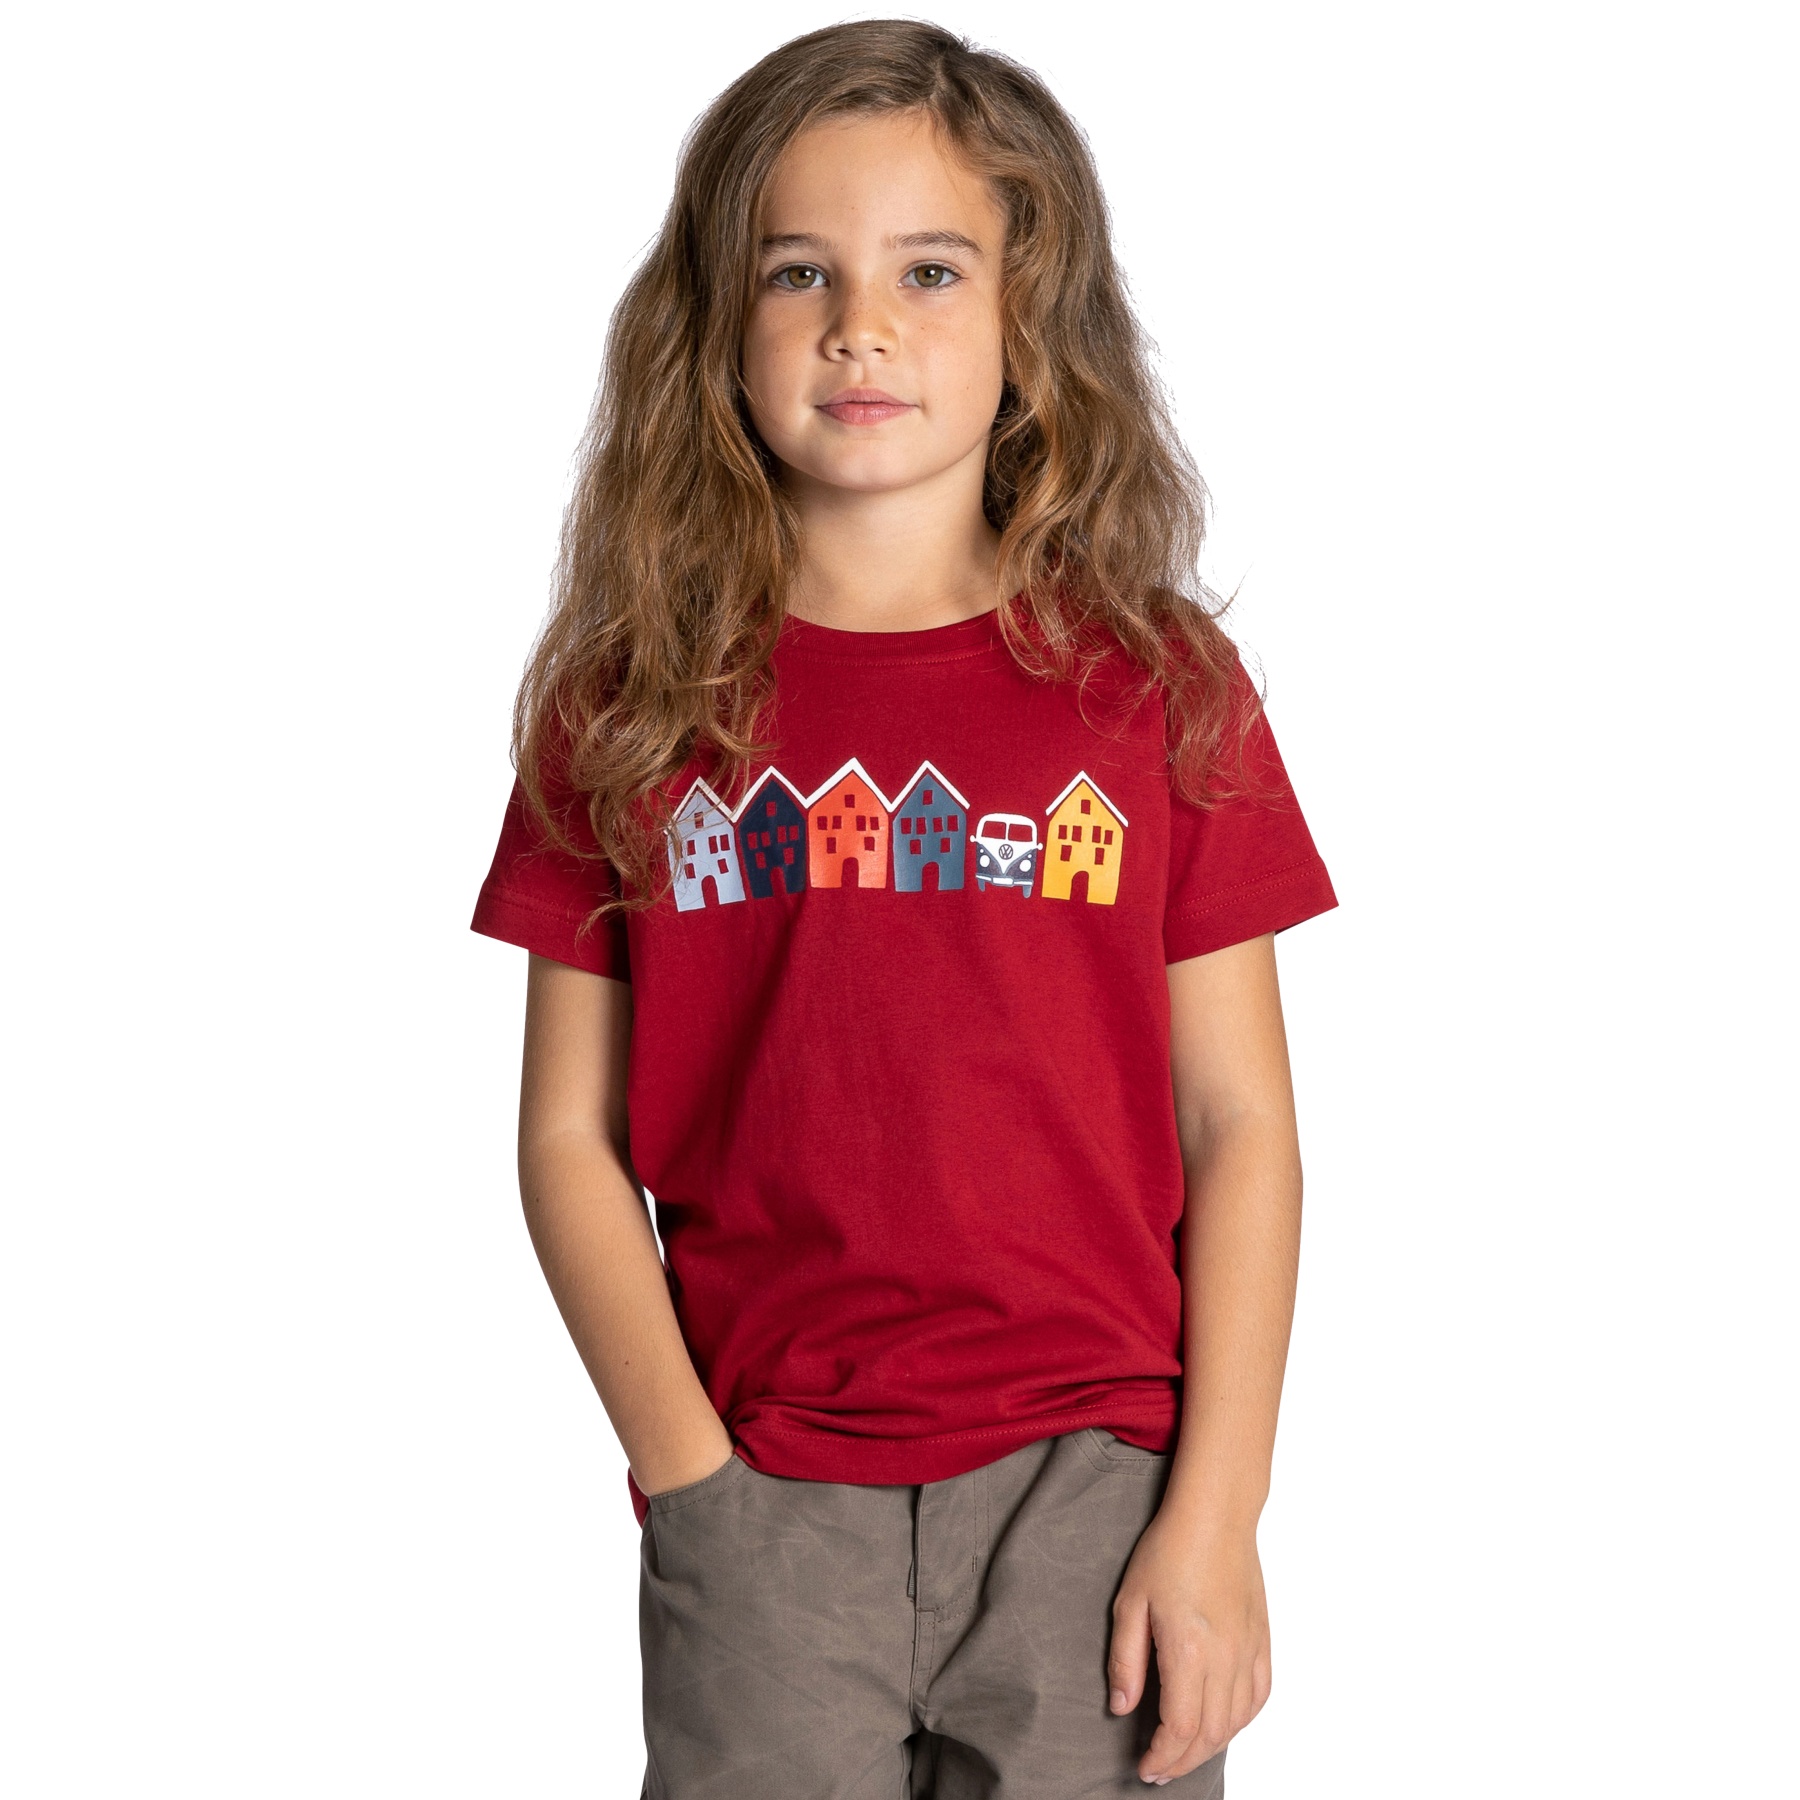 Produktbild von Elkline TINY HOUSE T-Shirt Kinder - Lizensiert von VW - chilipepperred